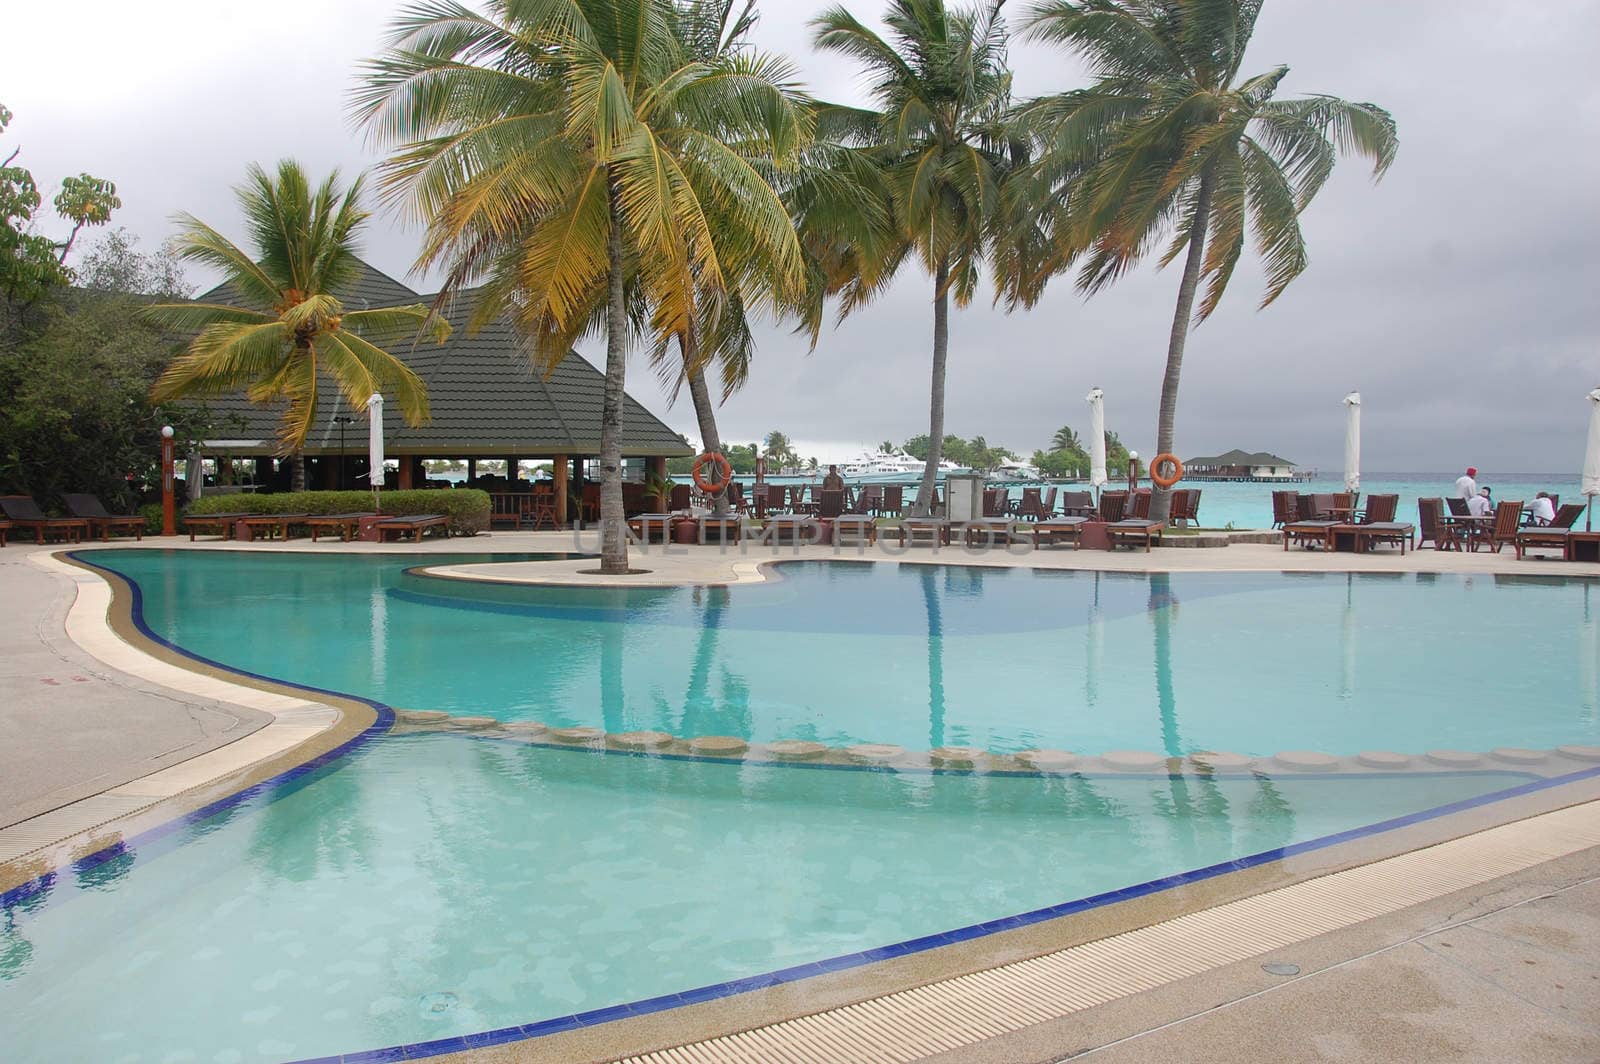 Hotel waterpool at Maldives resort